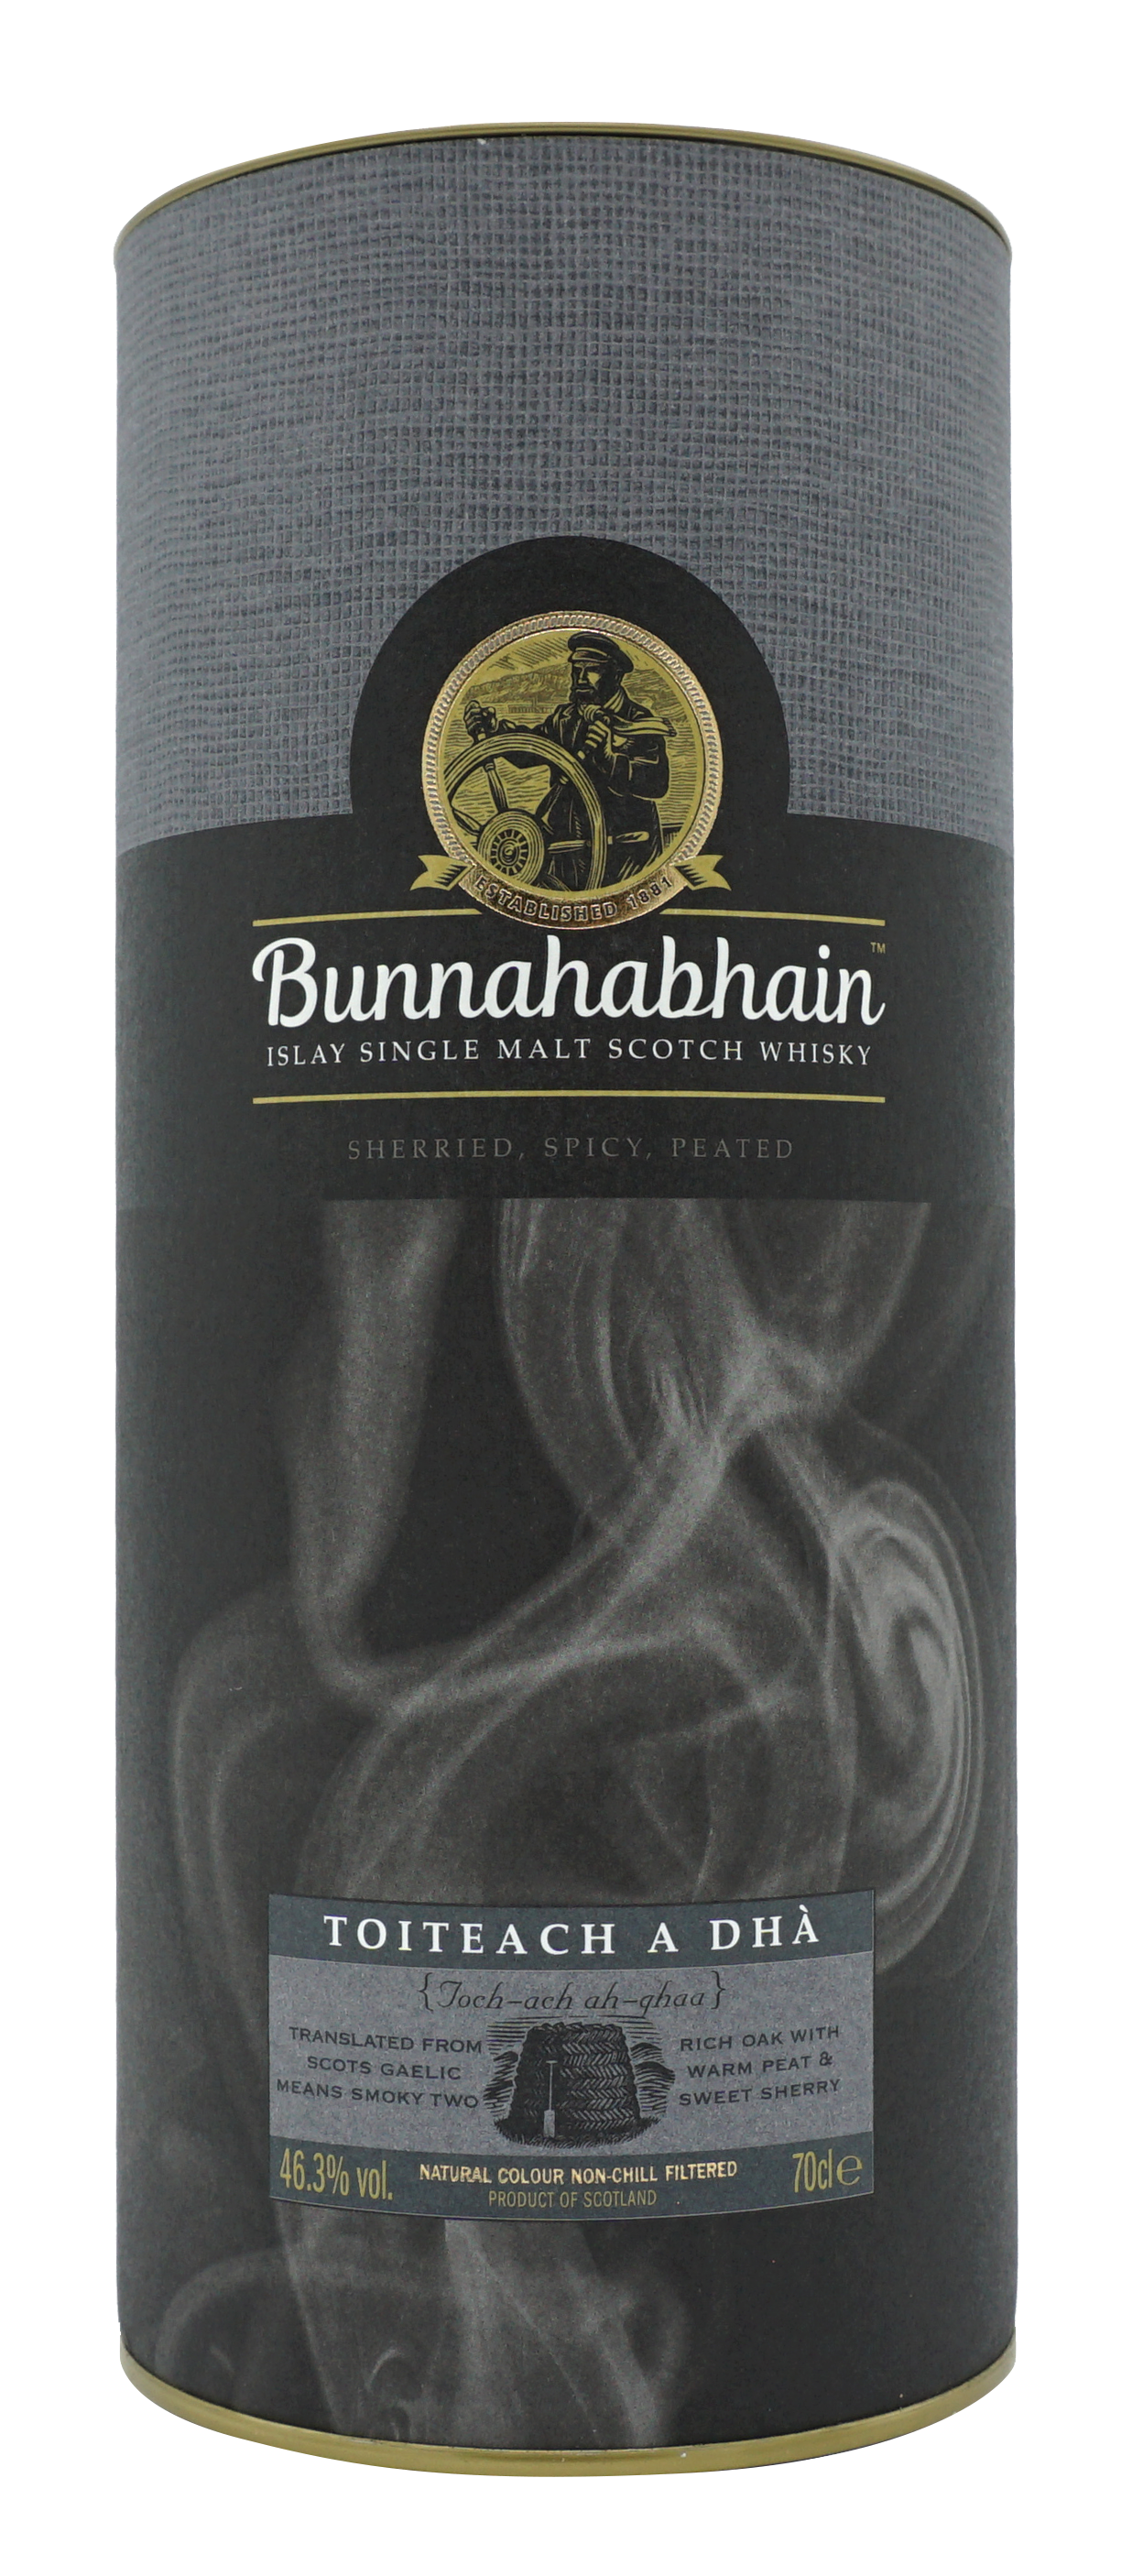 Bunnahabhain Toiteach A Dha Single Malt 70cl 463 Koker